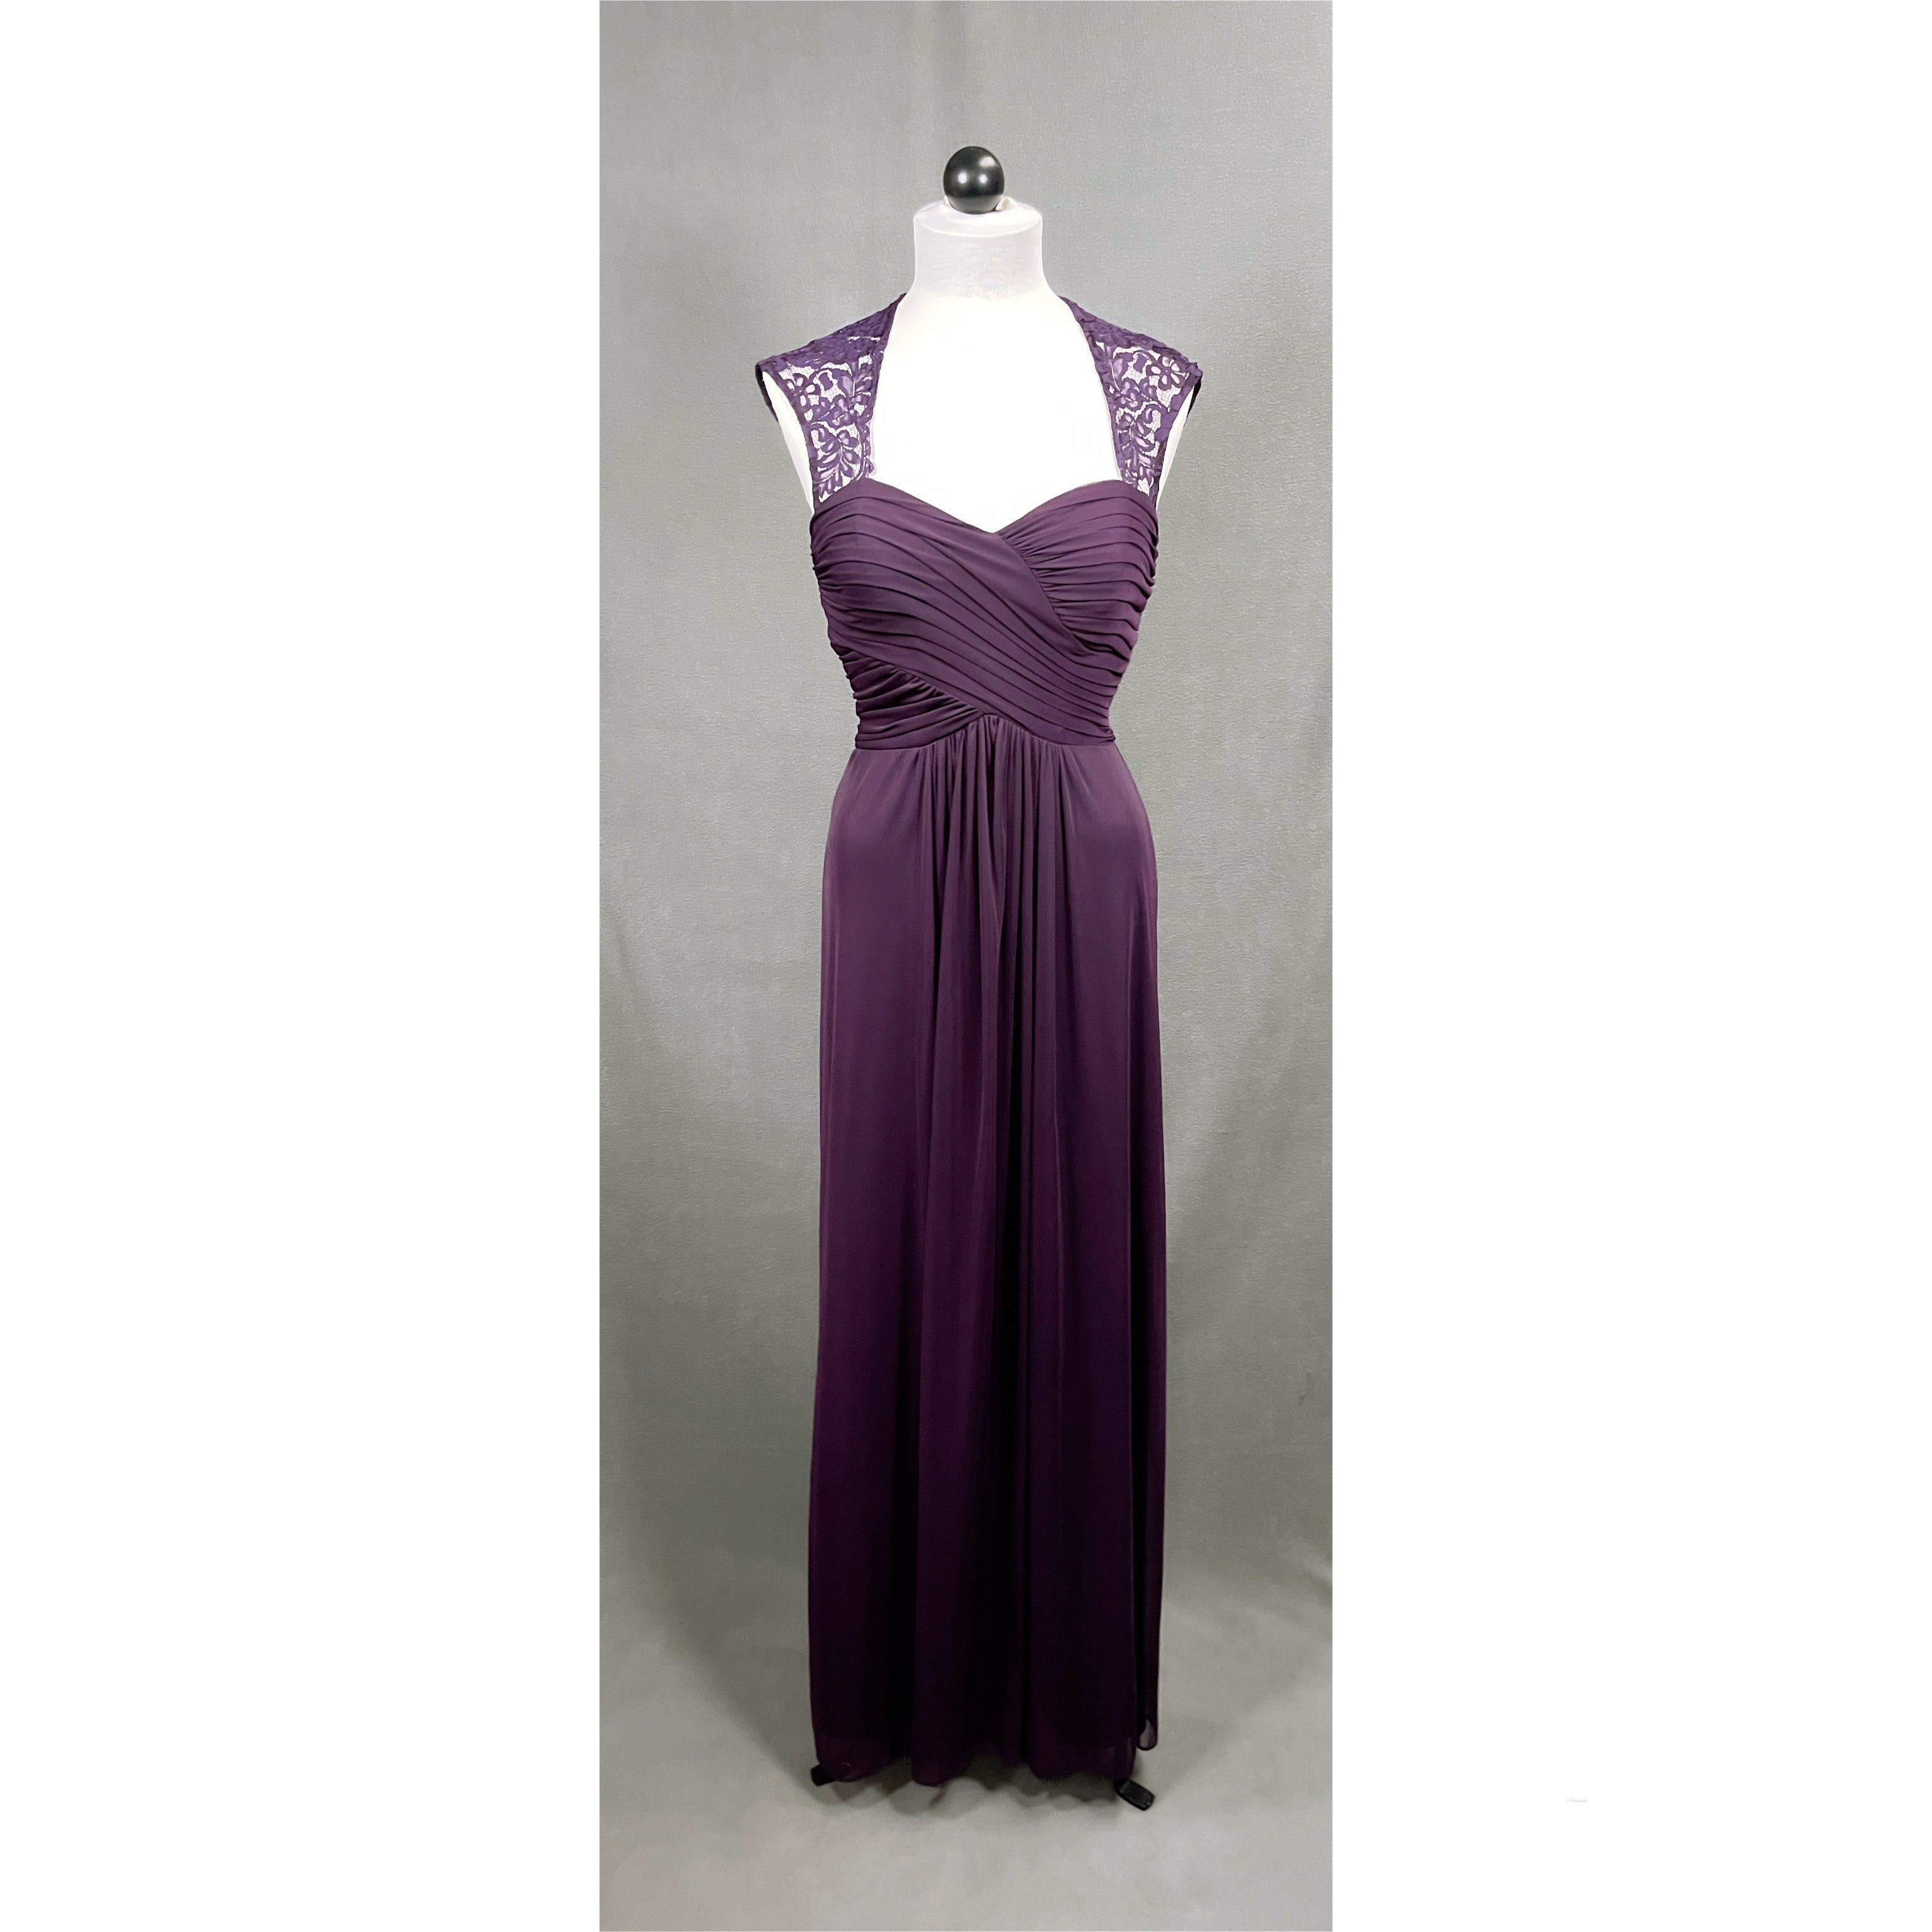 Camille la Vie purple dress, size 2